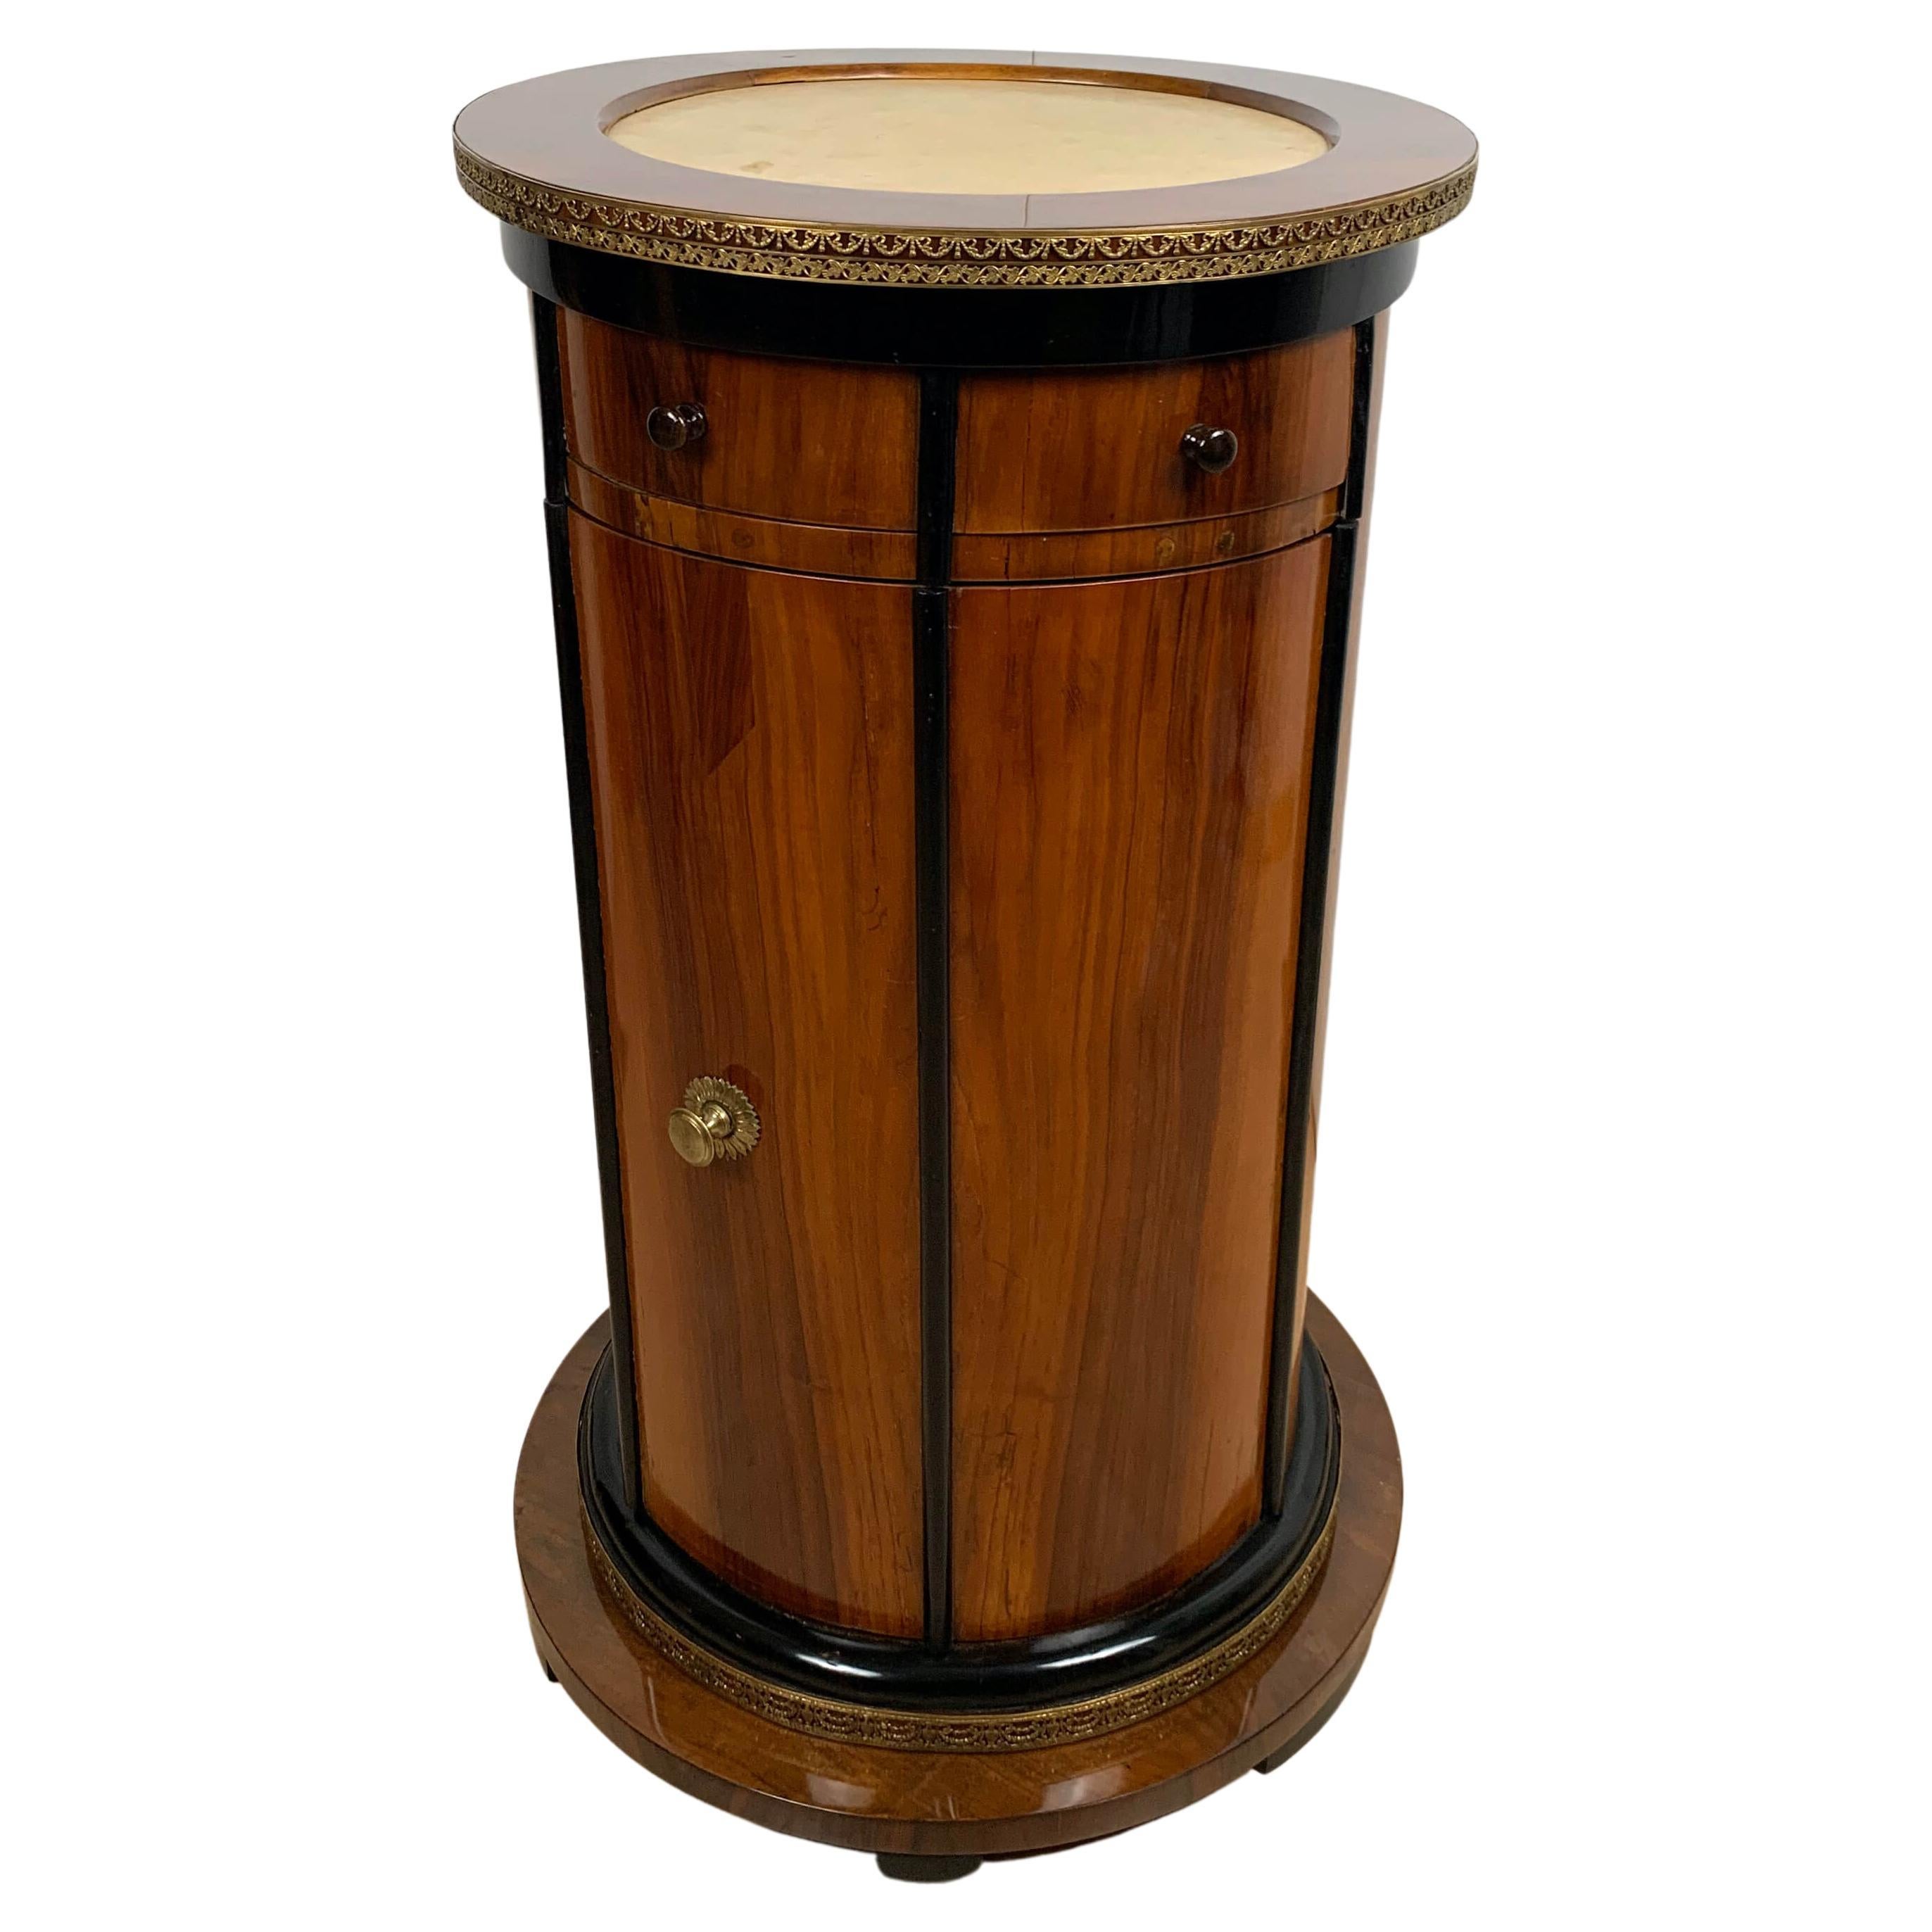 Round Biedermeier Drum Cabinet, Walnut Veneer, Austria, Vienna circa 1830